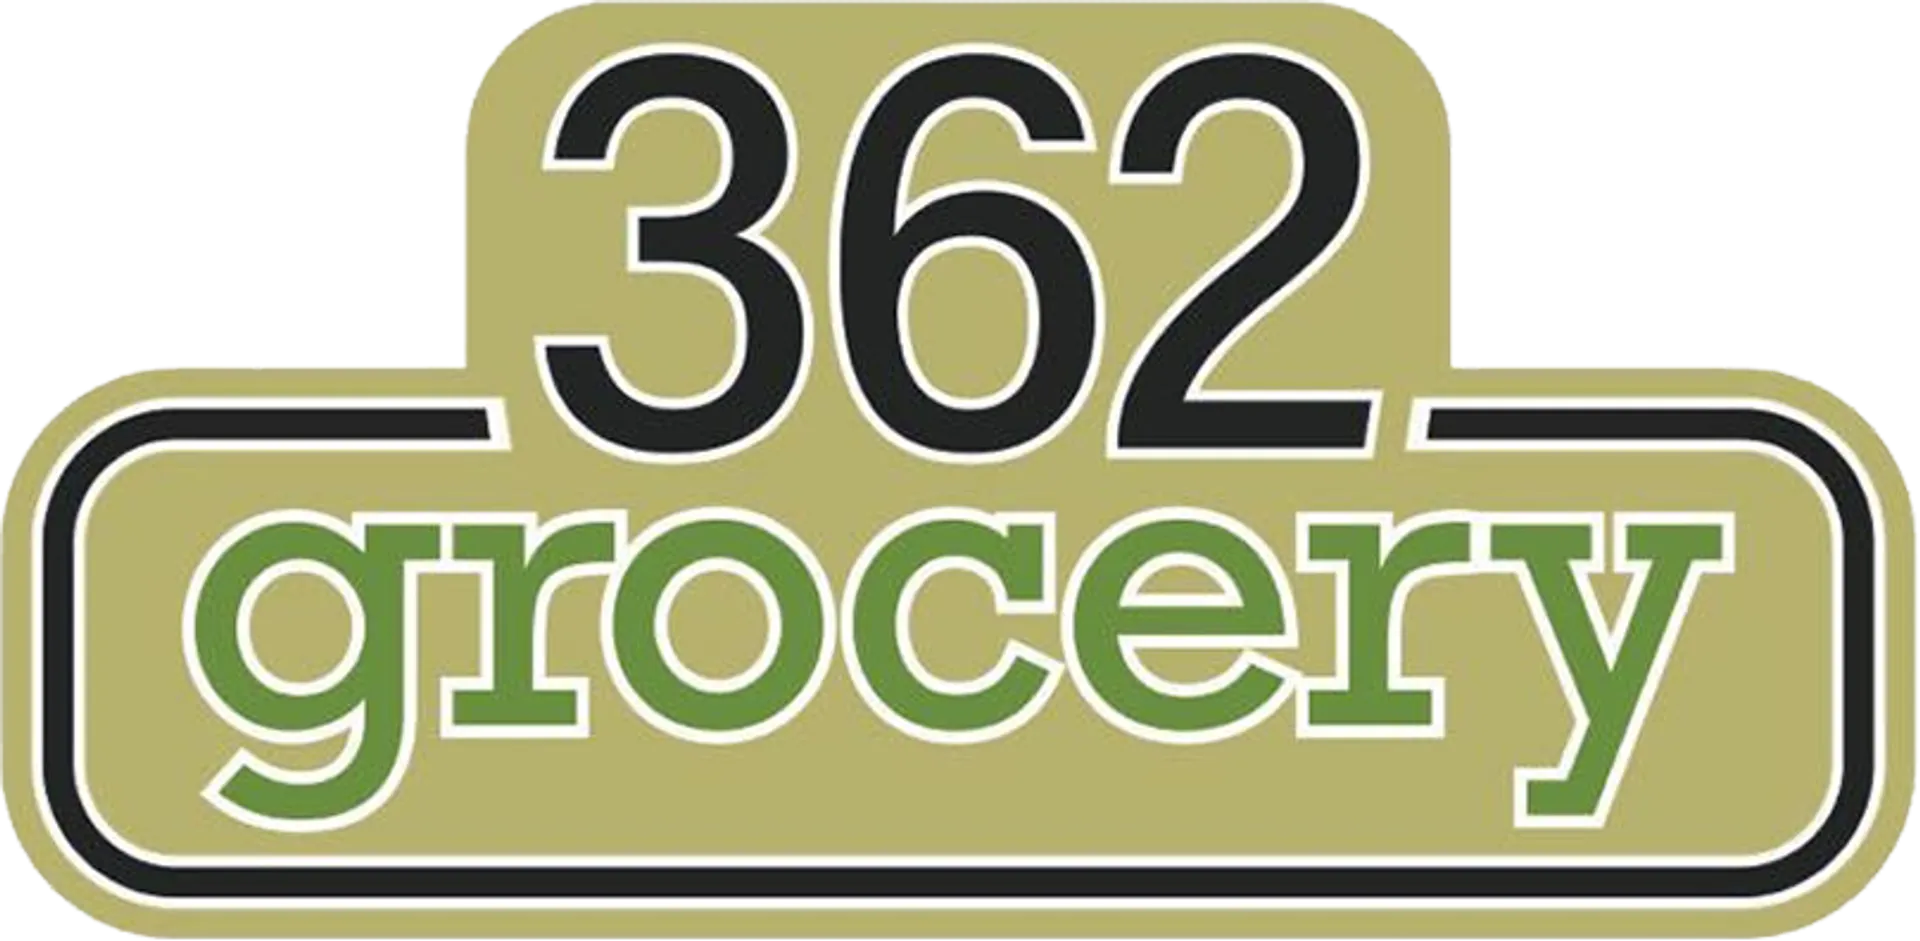 362 GROCERY logo